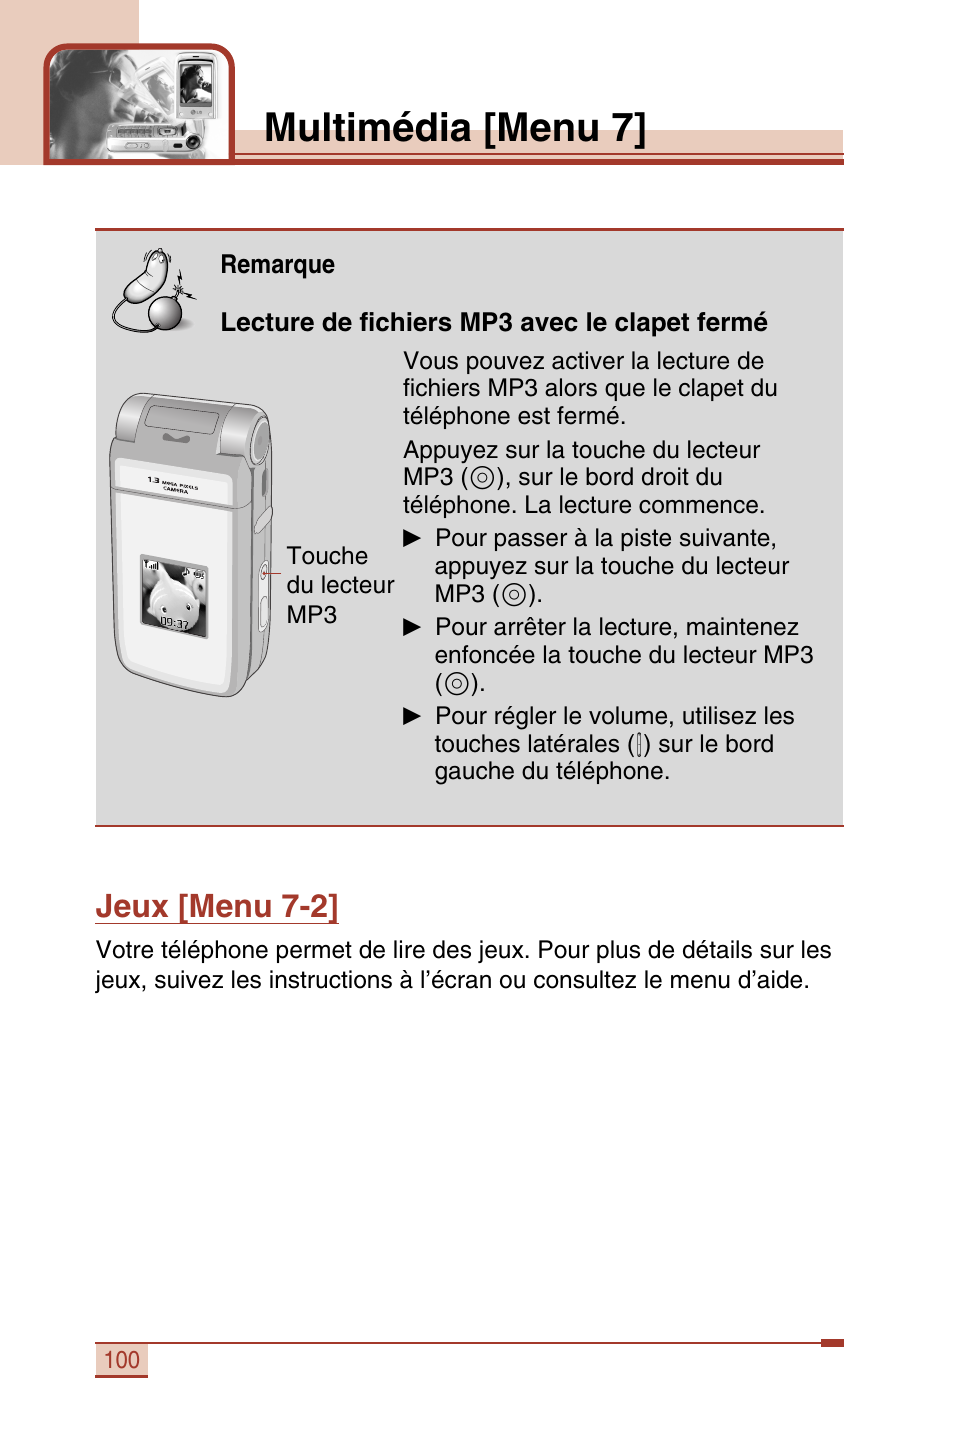 Multimédia [menu 7, Jeux [menu 7-2 | LG T5100 Manuel d'utilisation | Page 101 / 129